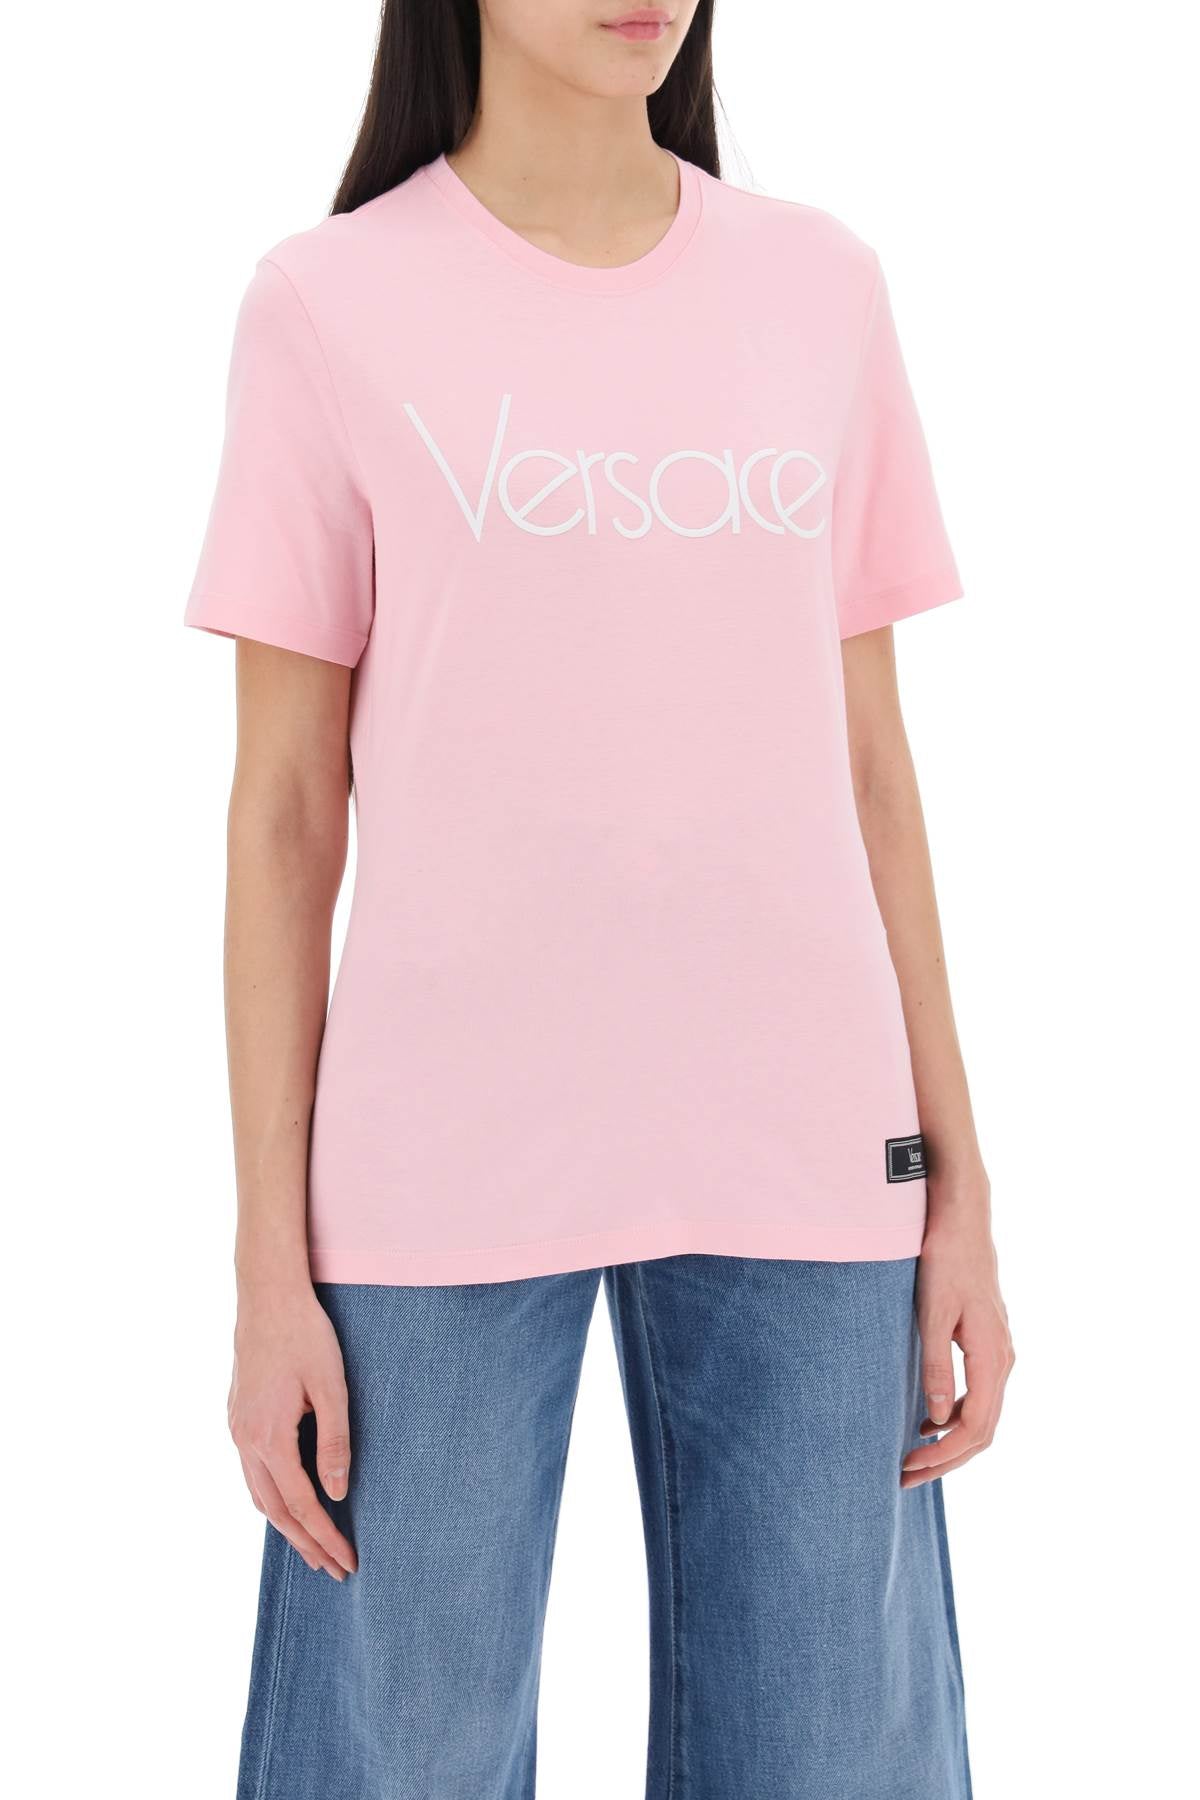 Versace-1